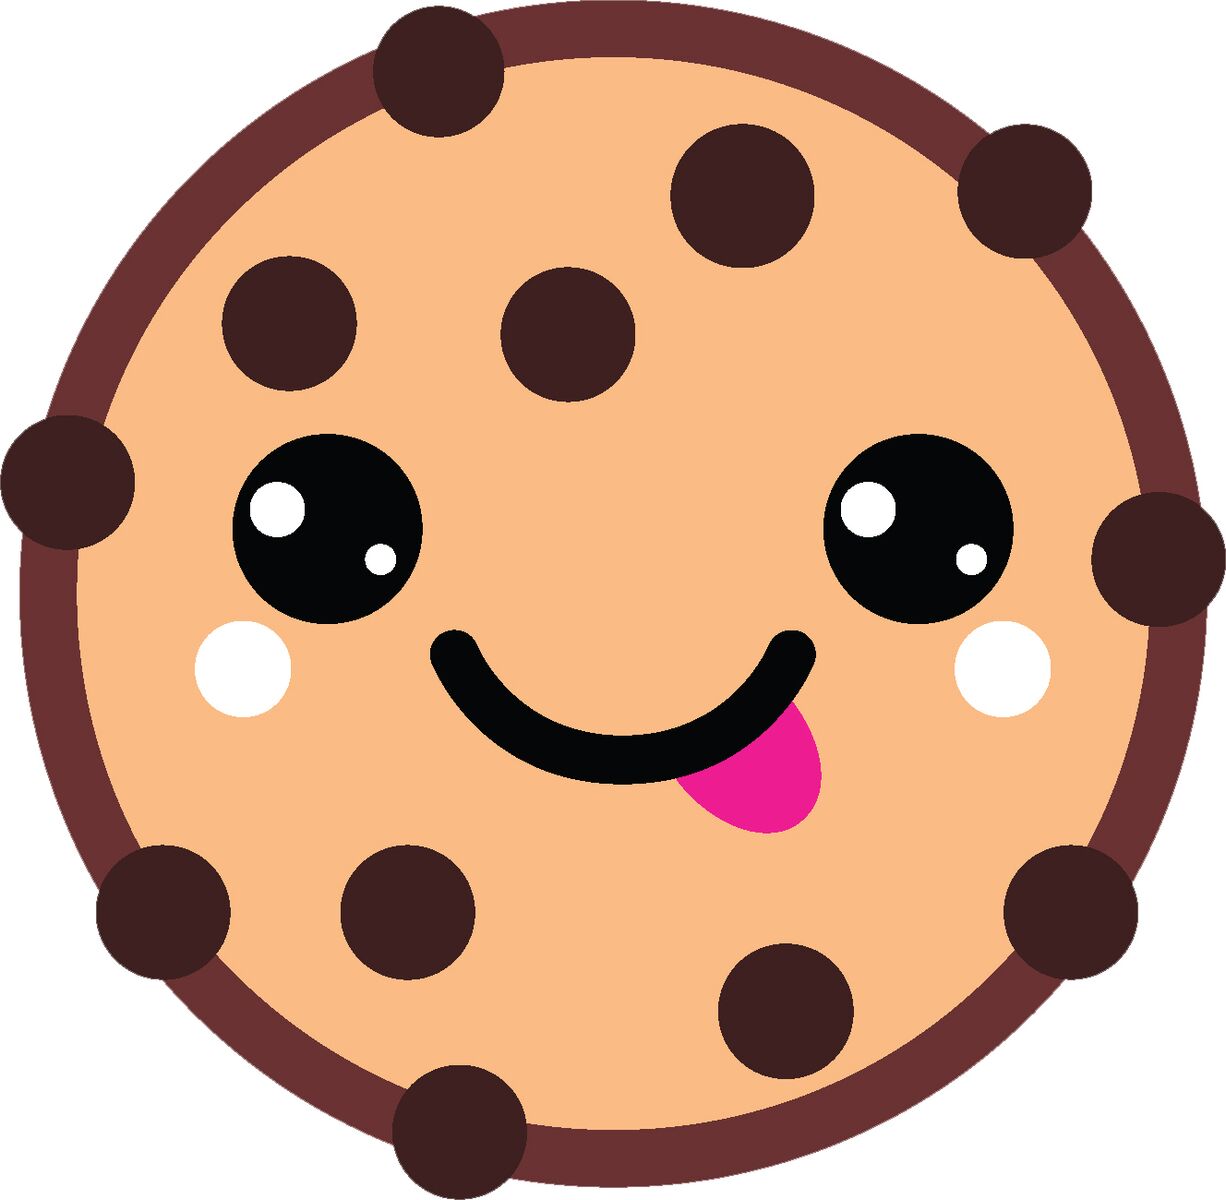 Delicious Yummy Dessert Treat Cartoon Emoji - Cookie #2 Vinyl Decal Sticker